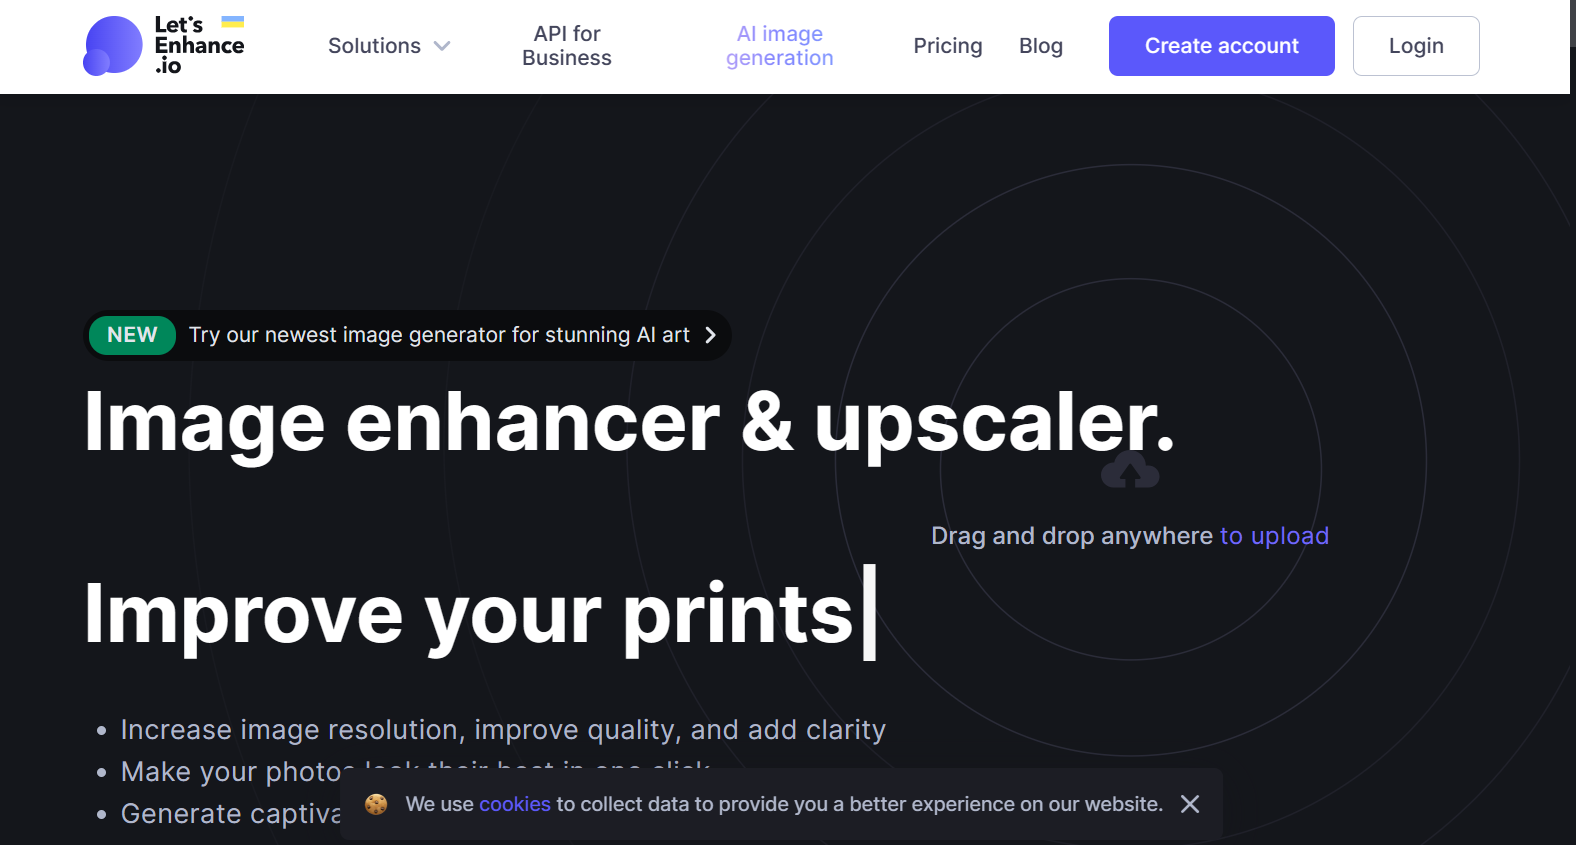 letsenhance.io – Image enhancer and upscaler